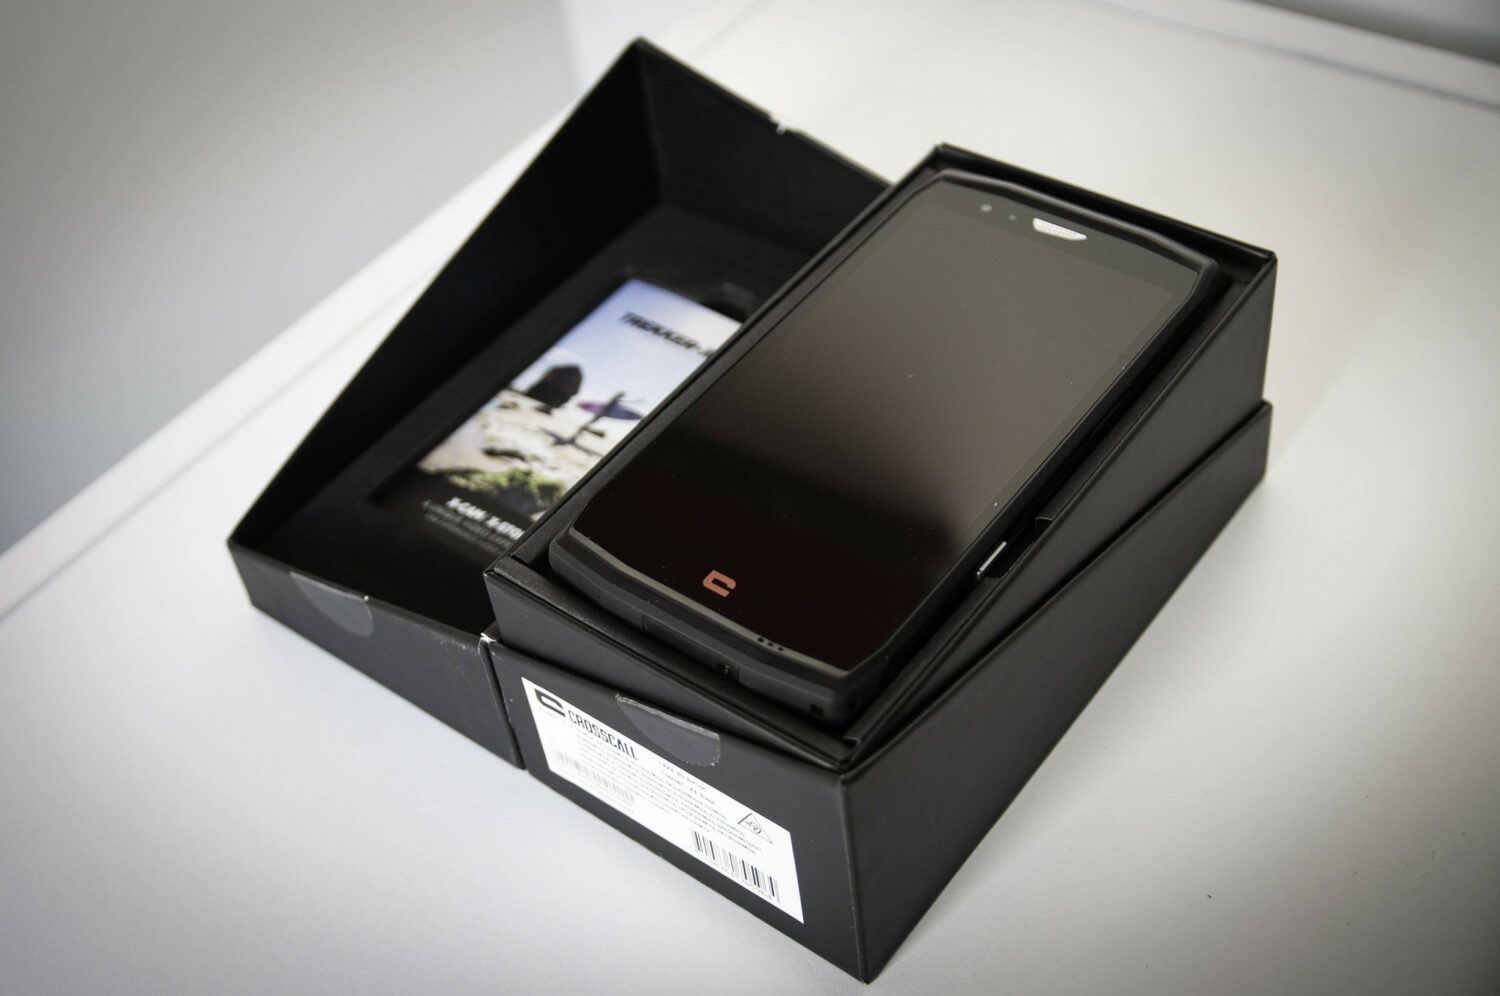 trekker DSC 0025 1500x996 Crosscall Trekker X4 – Le smartphone outdoor par excellence crosscall